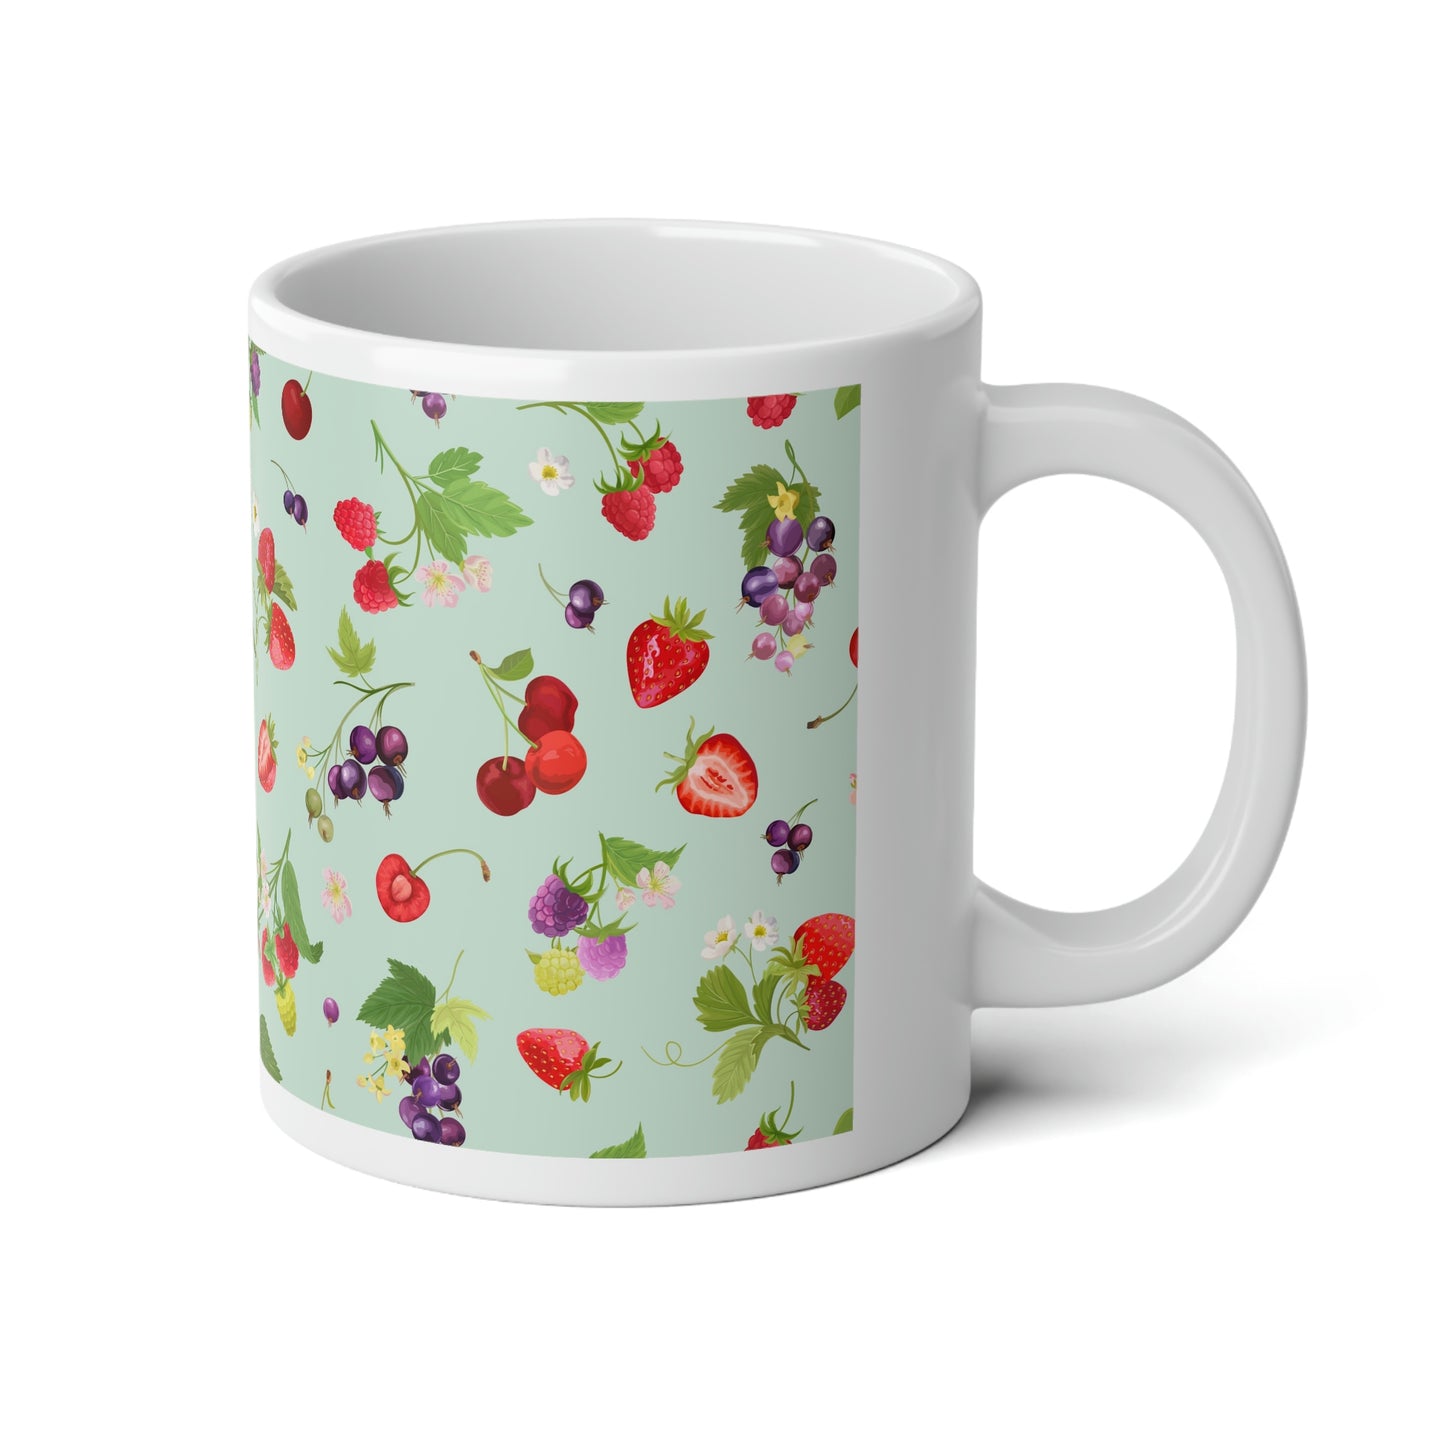 Cherries and Strawberries Jumbo Mug, 20oz